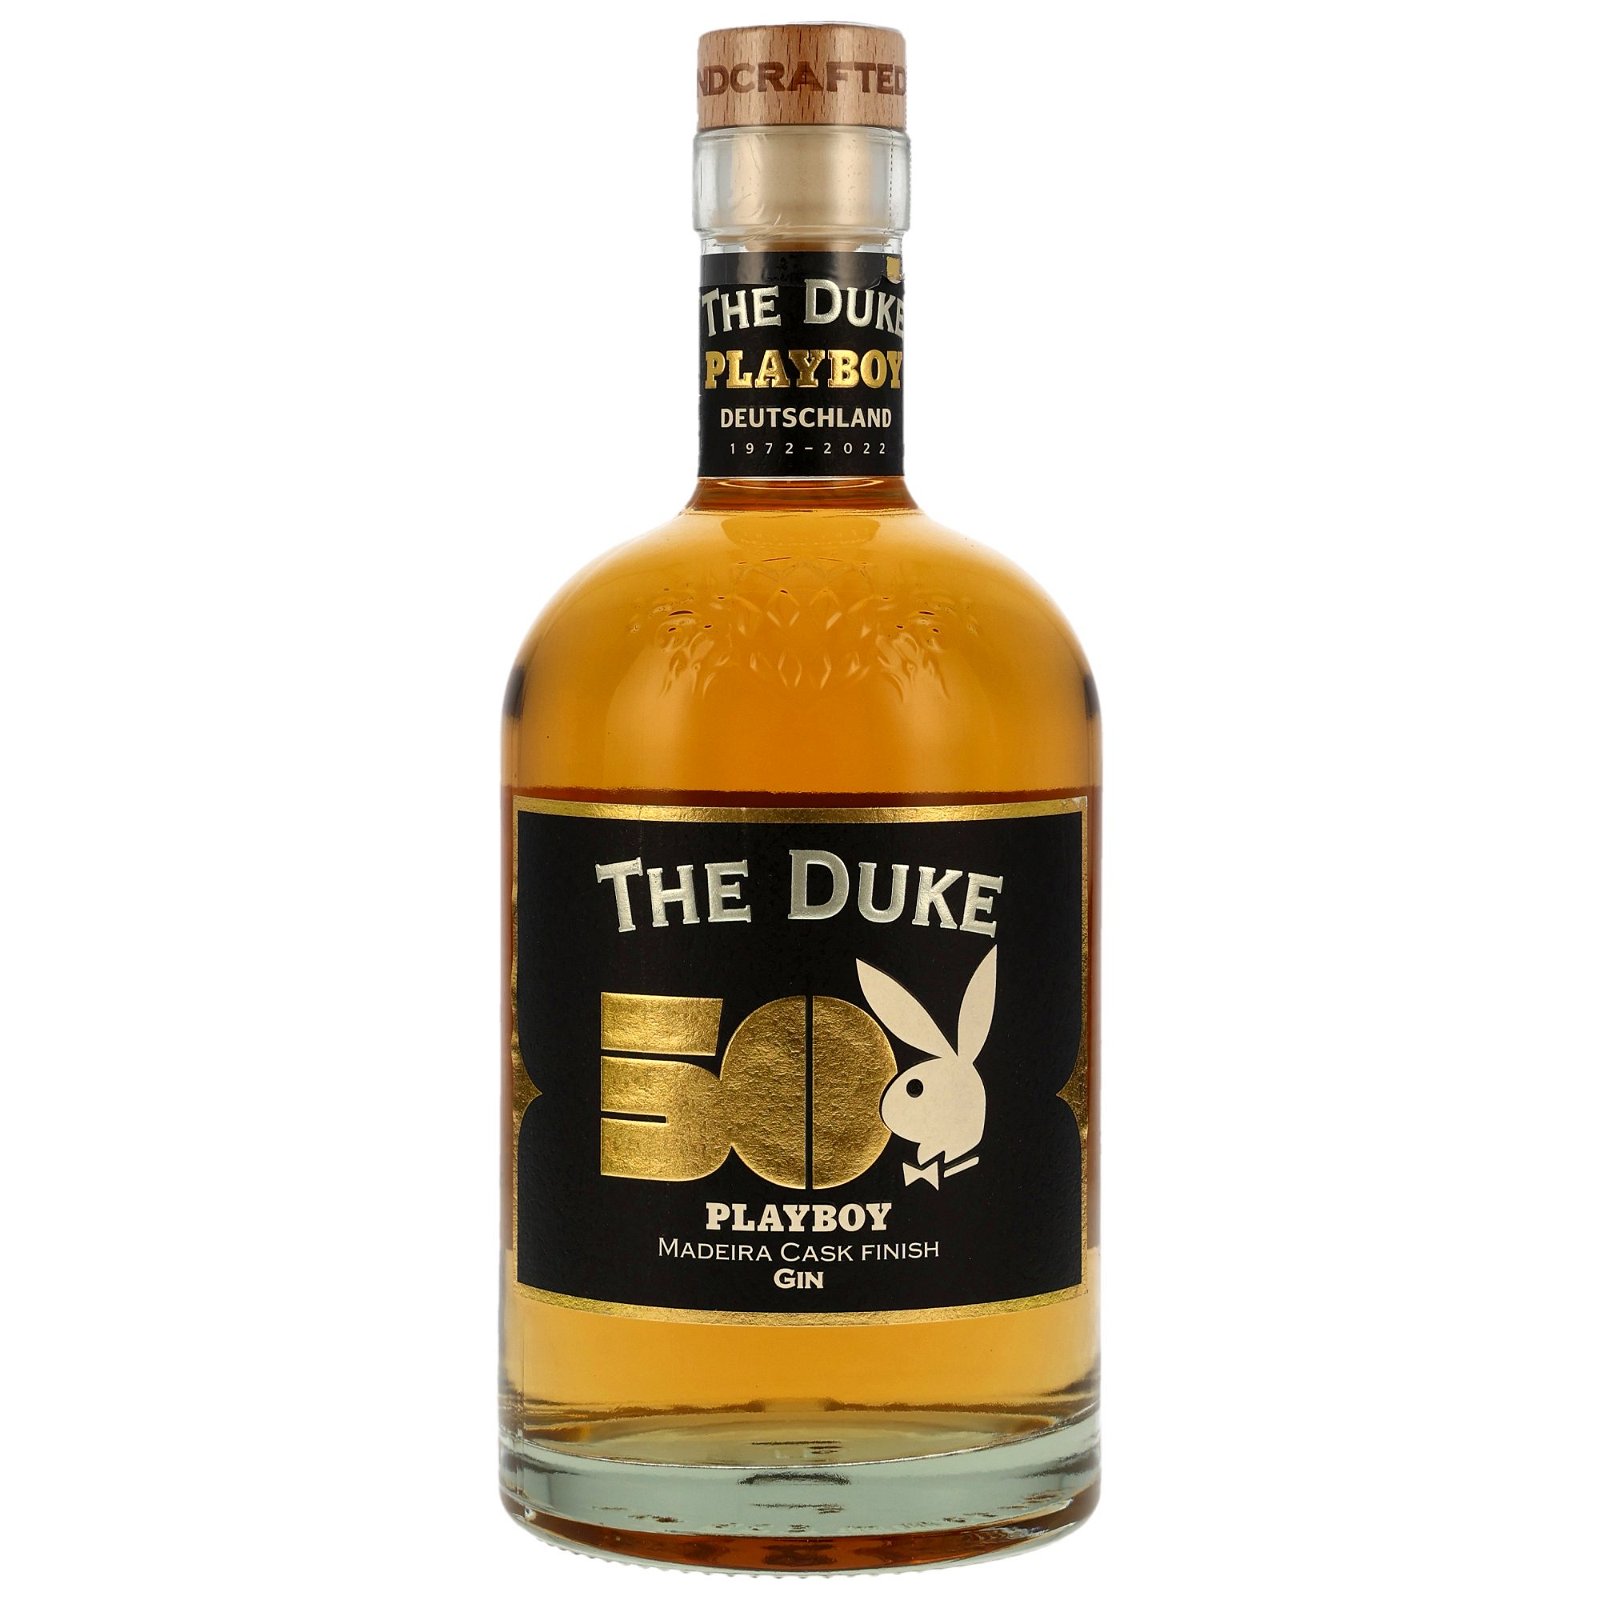 The Duke Playboy Gin Madeira Cask Finish (Bio)